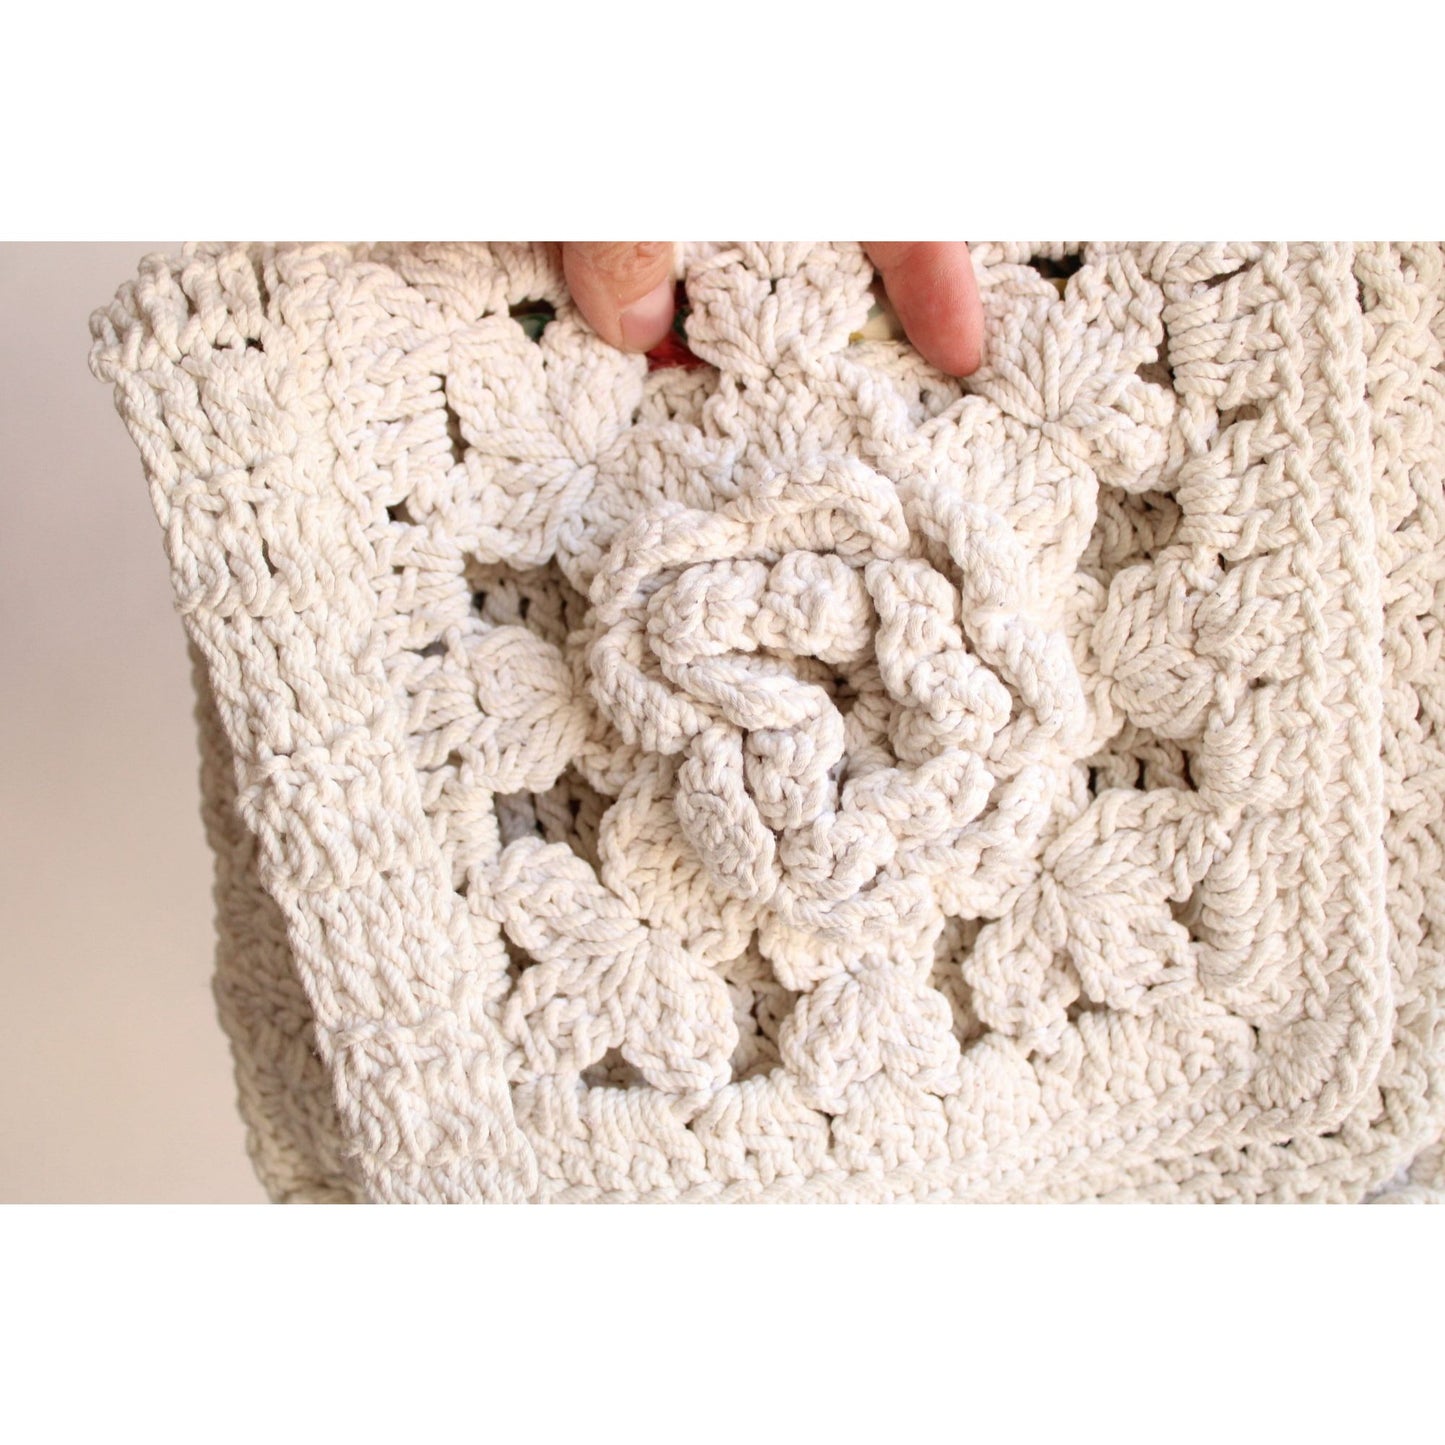 Vintage 1960s 1970s White Crochet Bag